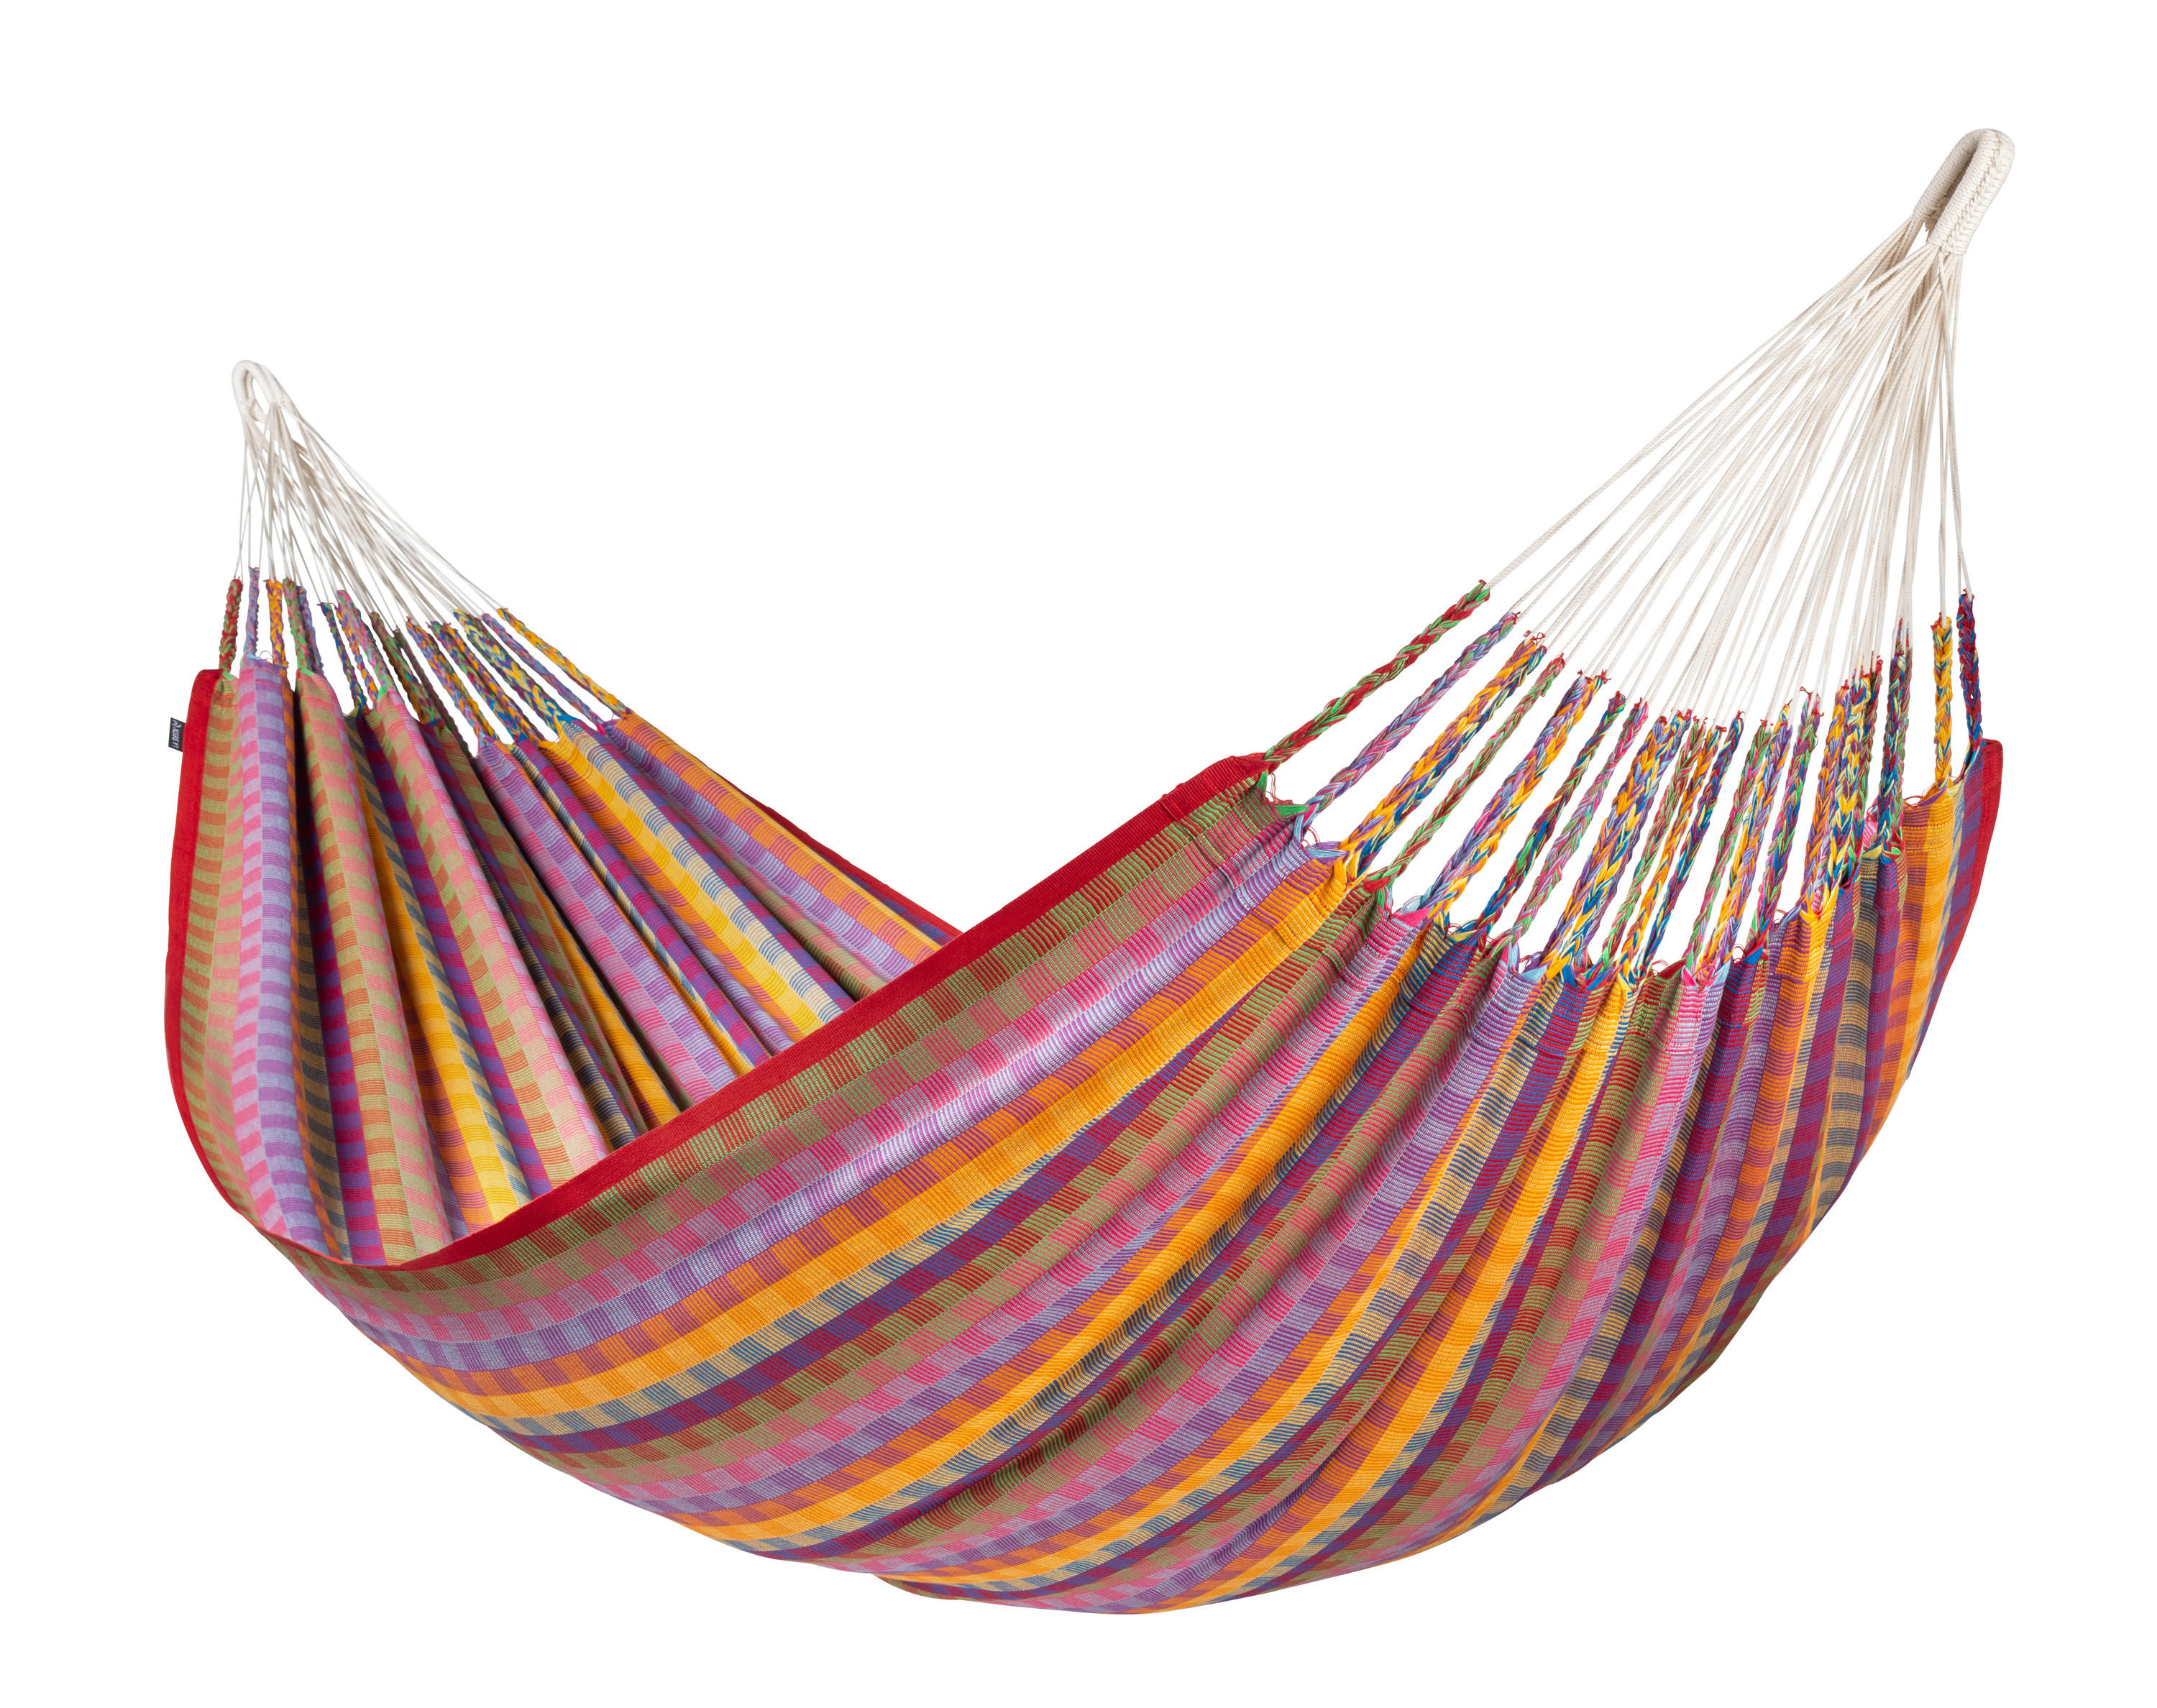 HÄNGEMATTE kingsize hammock  - Blau/Gelb, KONVENTIONELL, Textil (180/400cm)